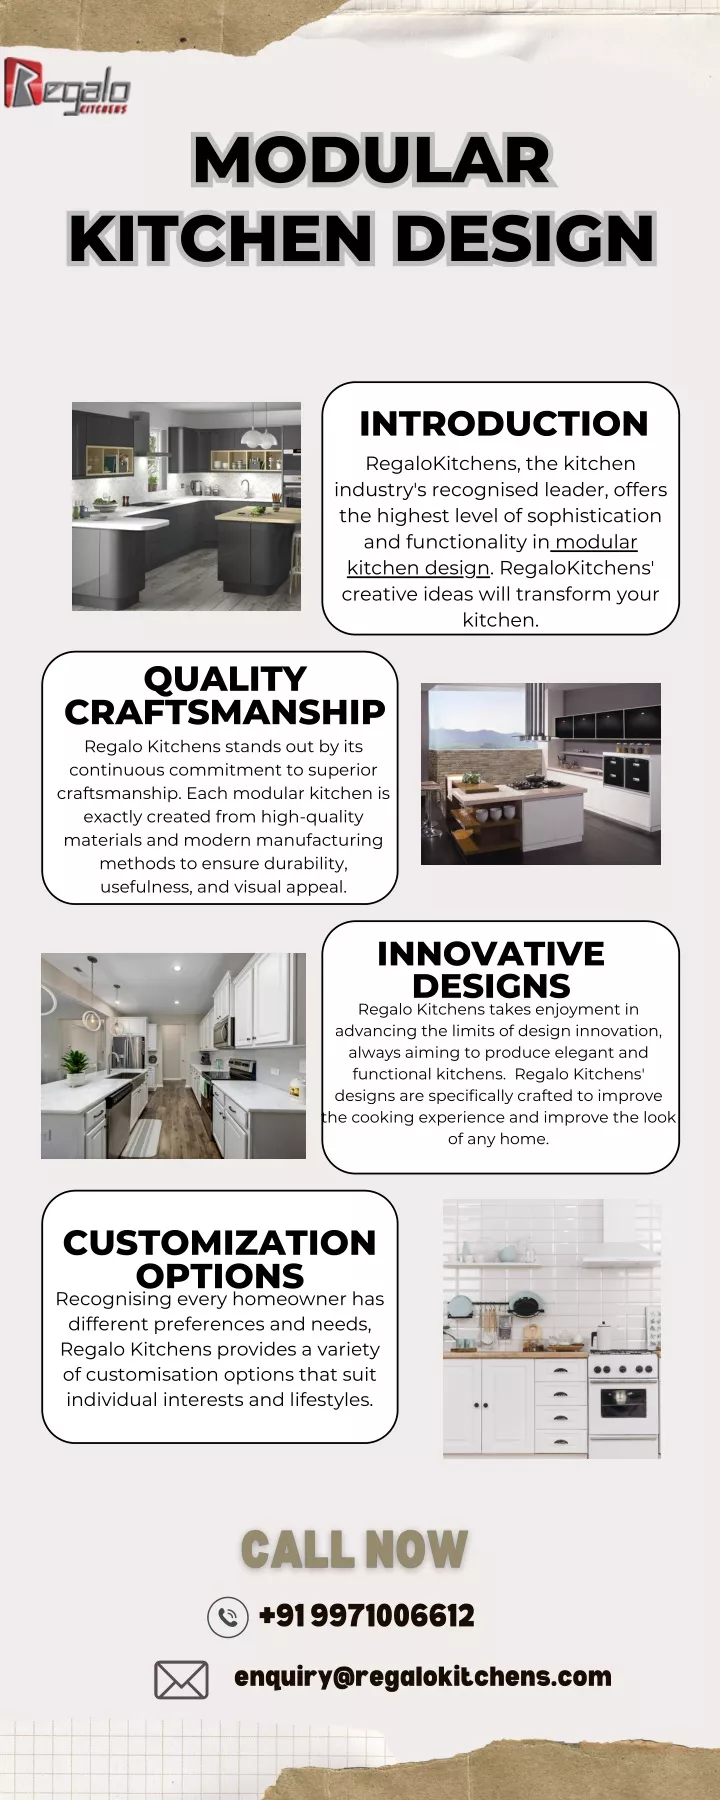 modular kitchen design kitchen design